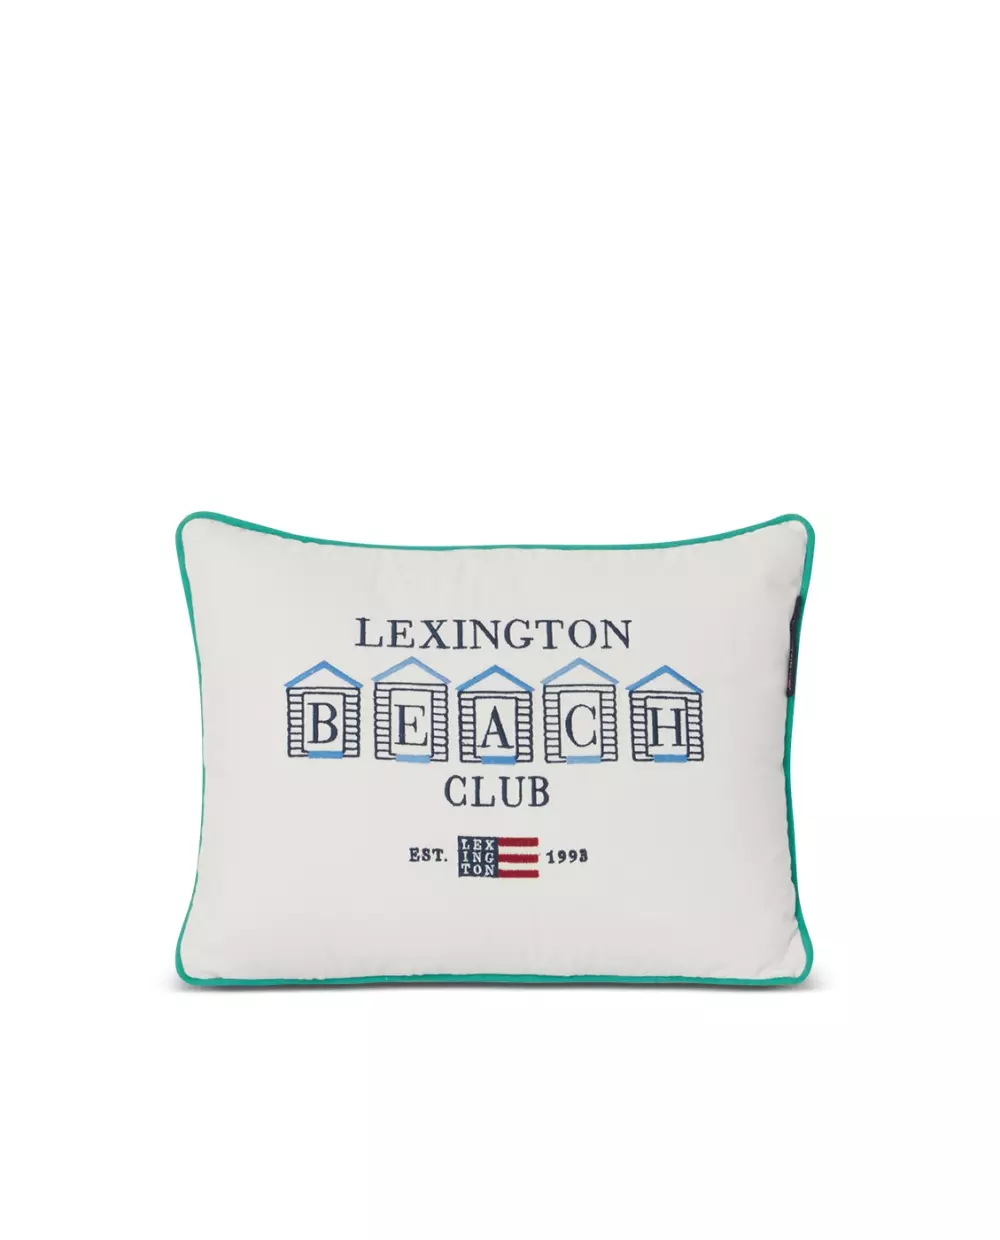 Lexington Pute Beach Club, 7321301695867, 122302581606-SH10, Tekstil, Puter og Putetrekk, Lexington, Beach Club Small Embroidered Organic Cotton Pillow